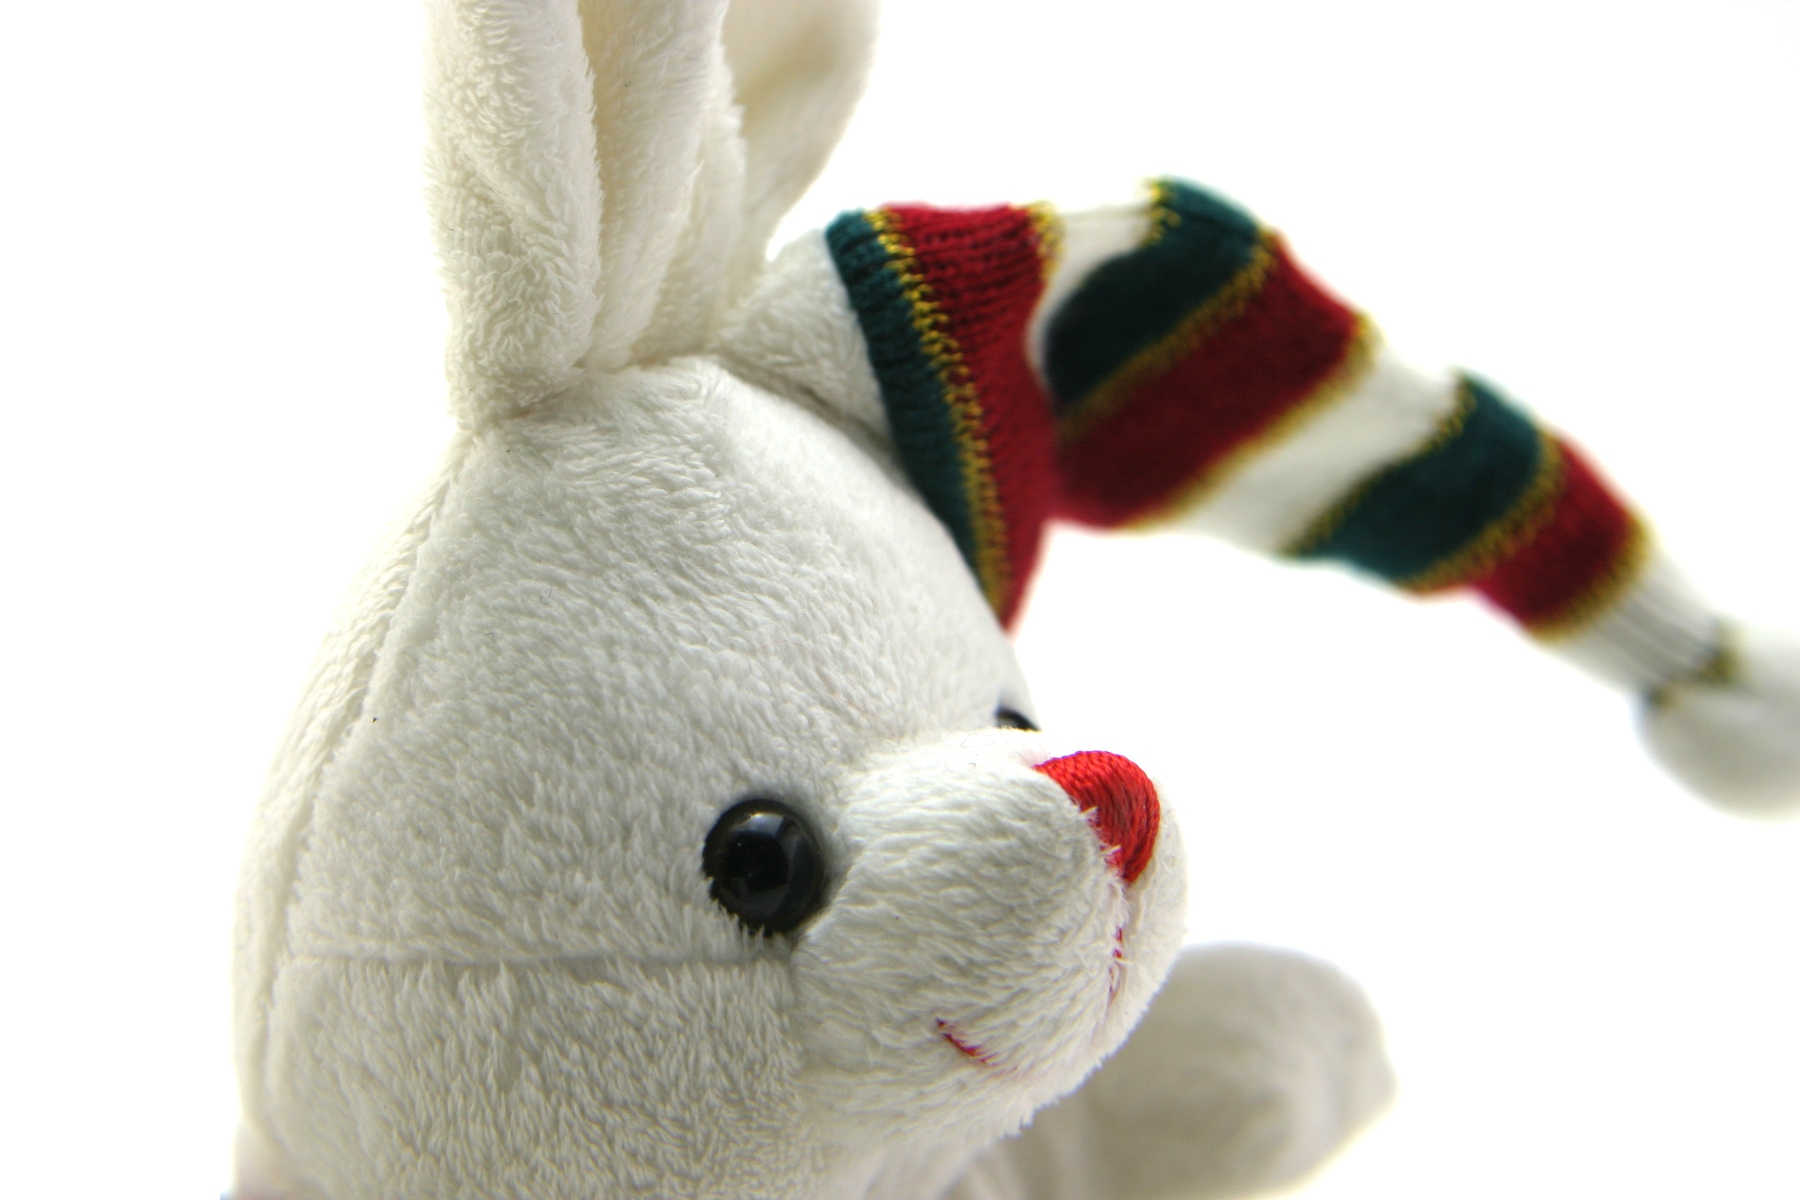 Adorable generic stuffed bunny photo